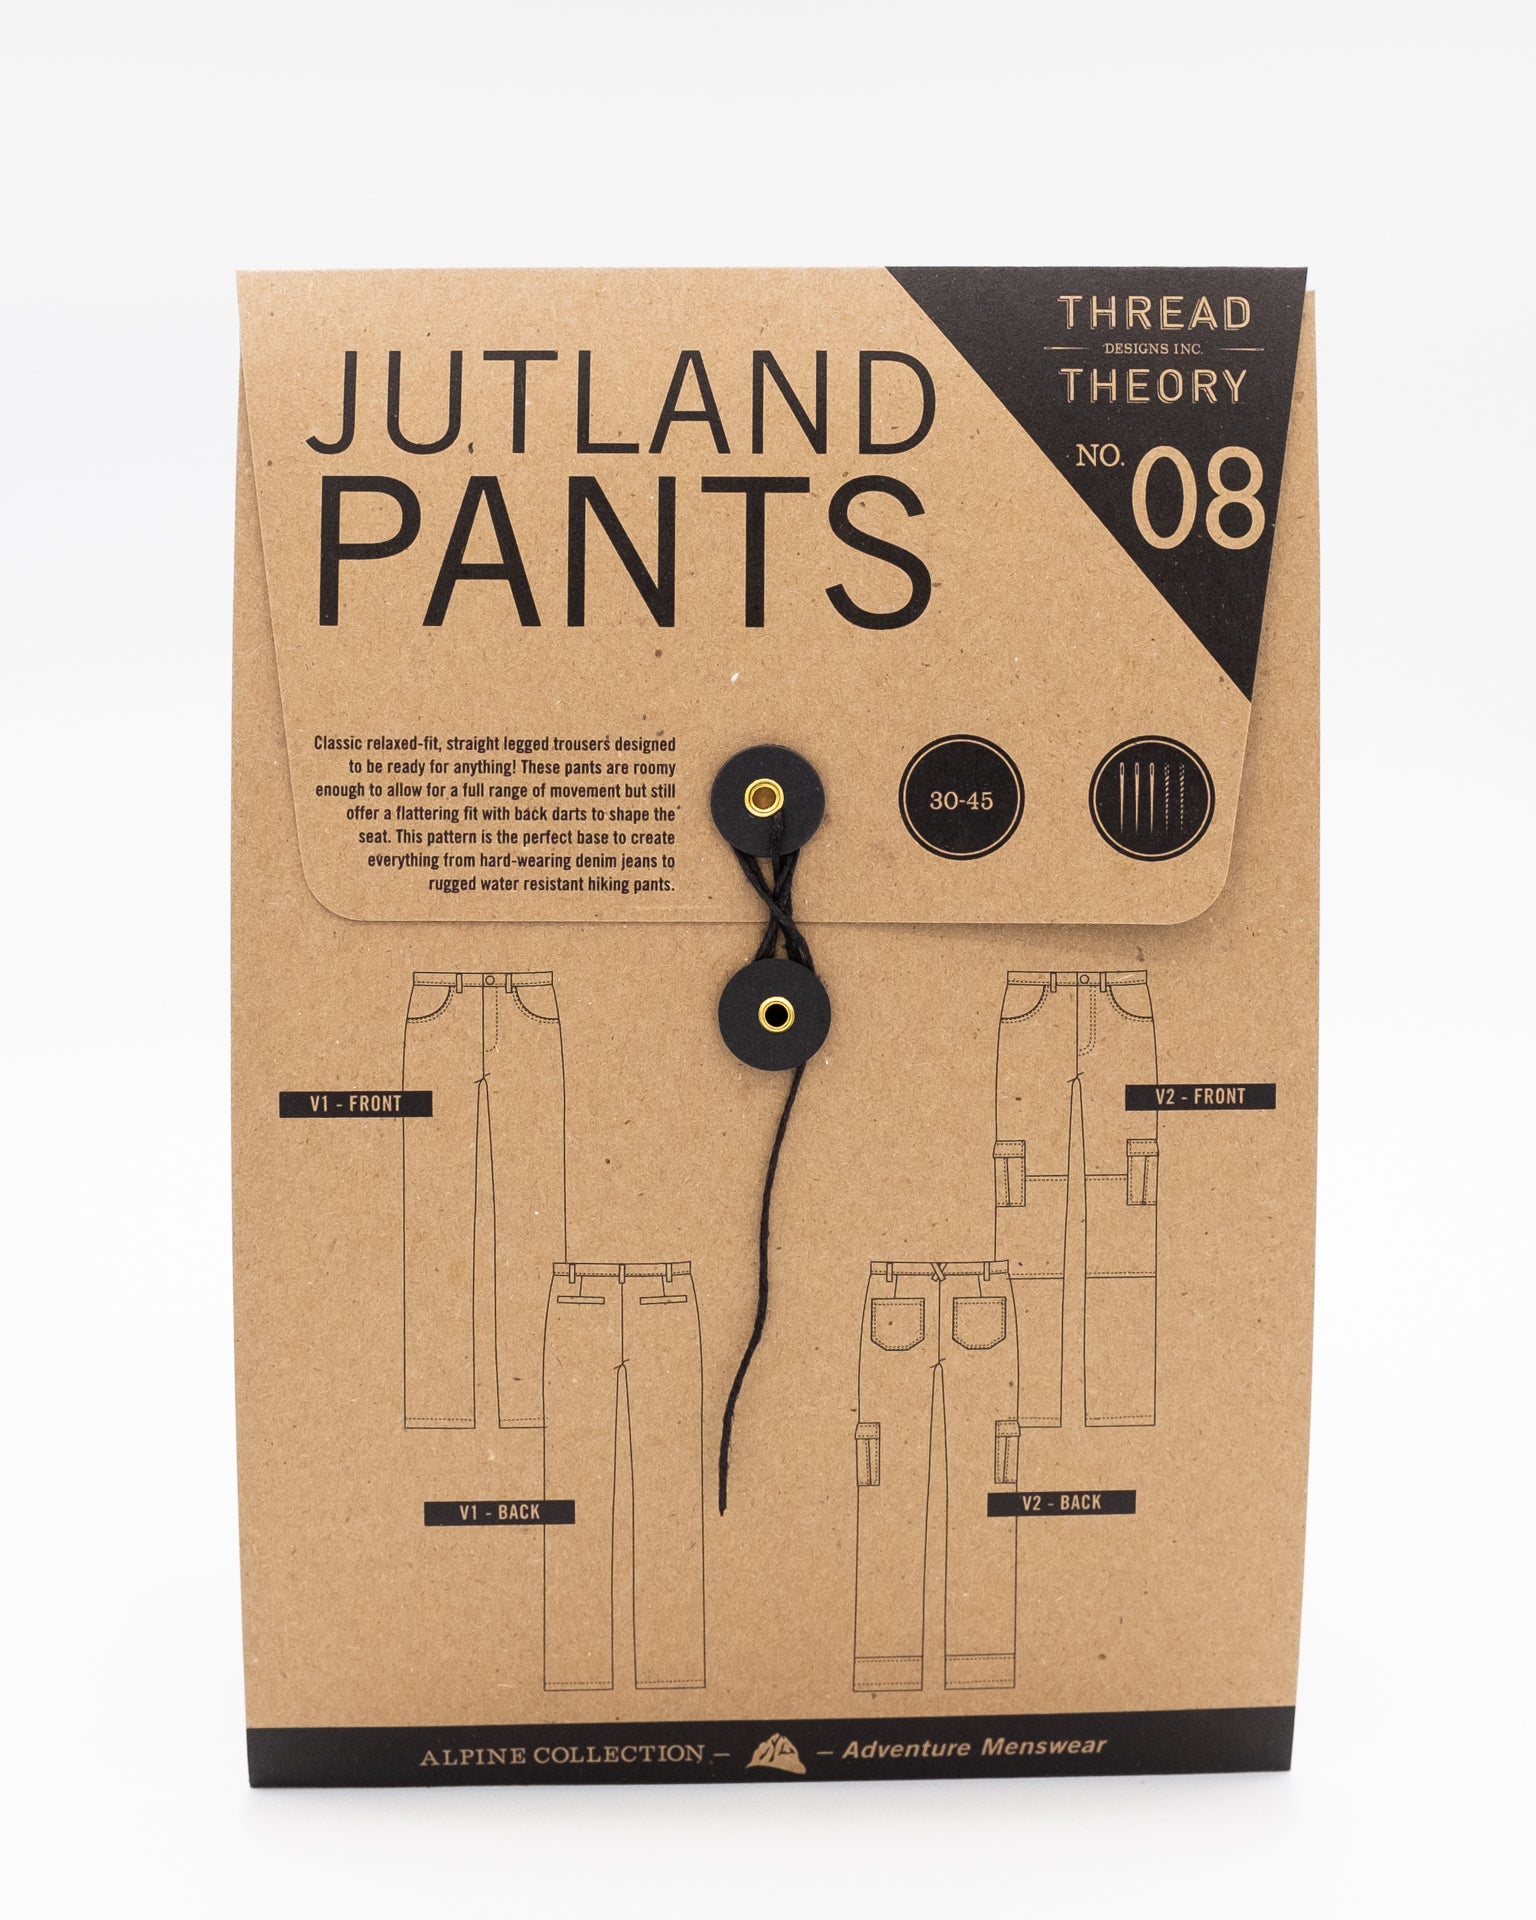 Jutland Pants Tissue Pattern – Thread Theory